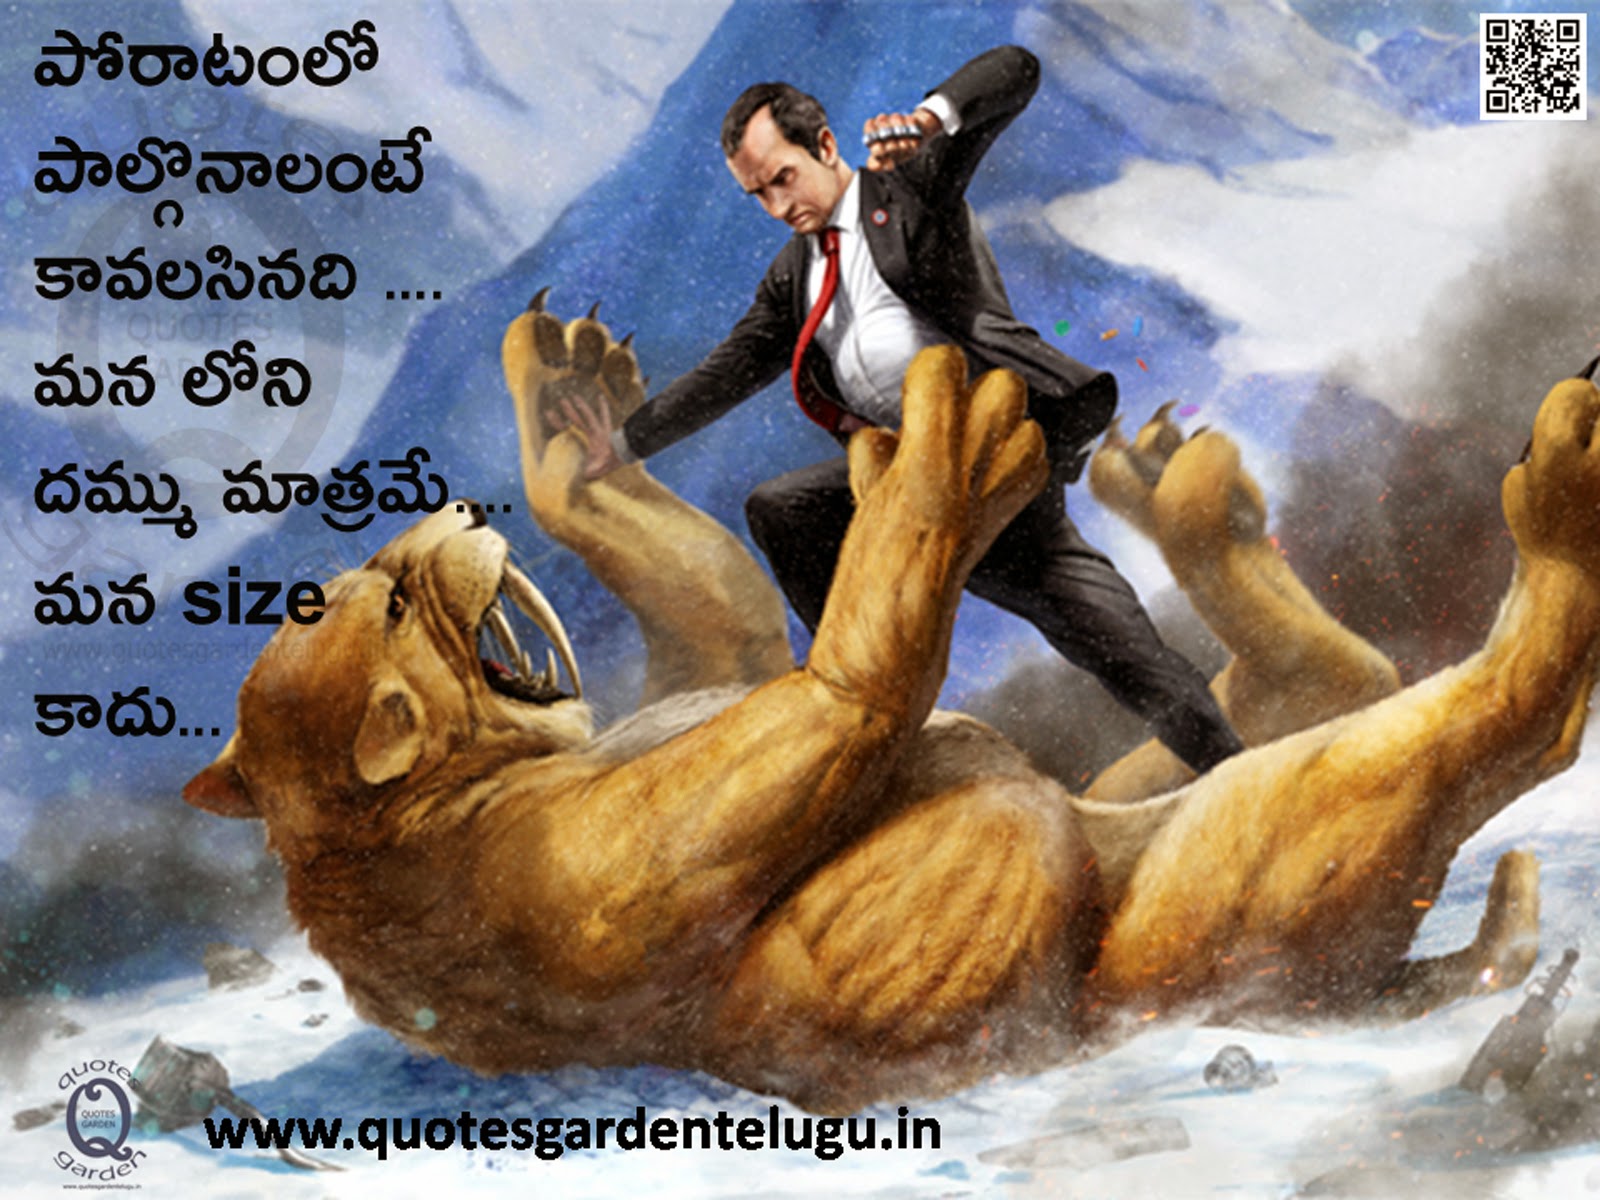 Images photoes Telugu inspirational life quotes quotesgardentelugu